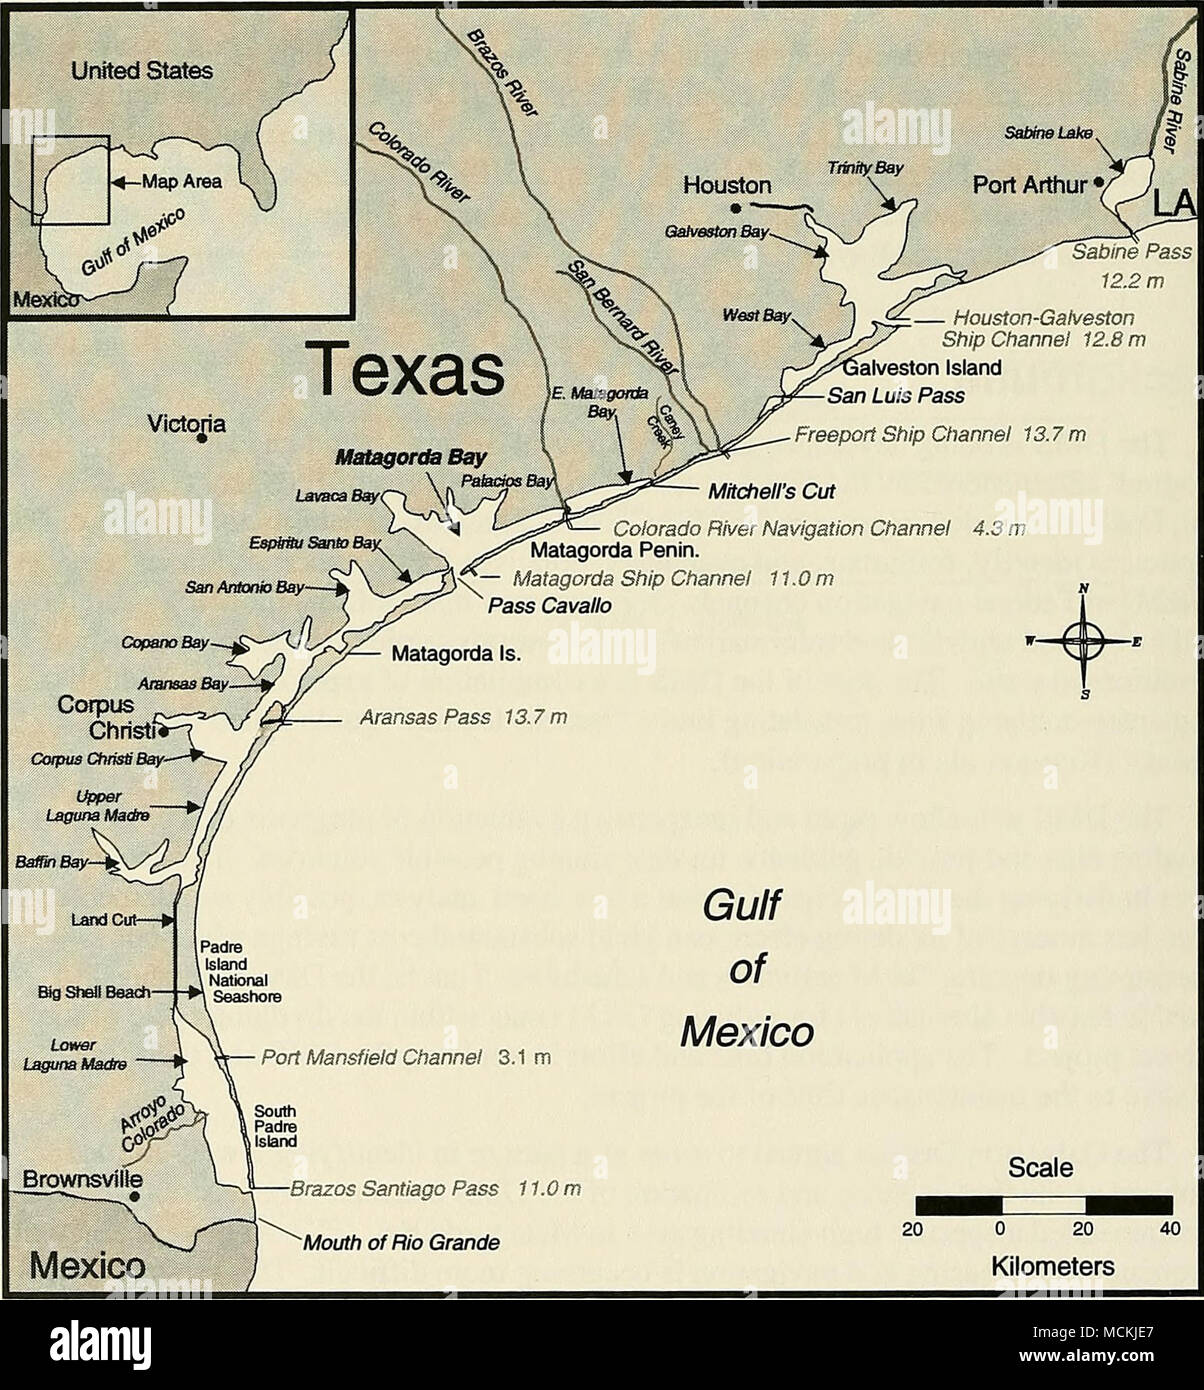 Golfo De Mexico Mexico Santiago Brazos Pasar De 11 0 M Boca De Rio Grande De A 40 Kilometros De La Figura 1 Mapa De Ubicacion Para El Sitio Del Estudio